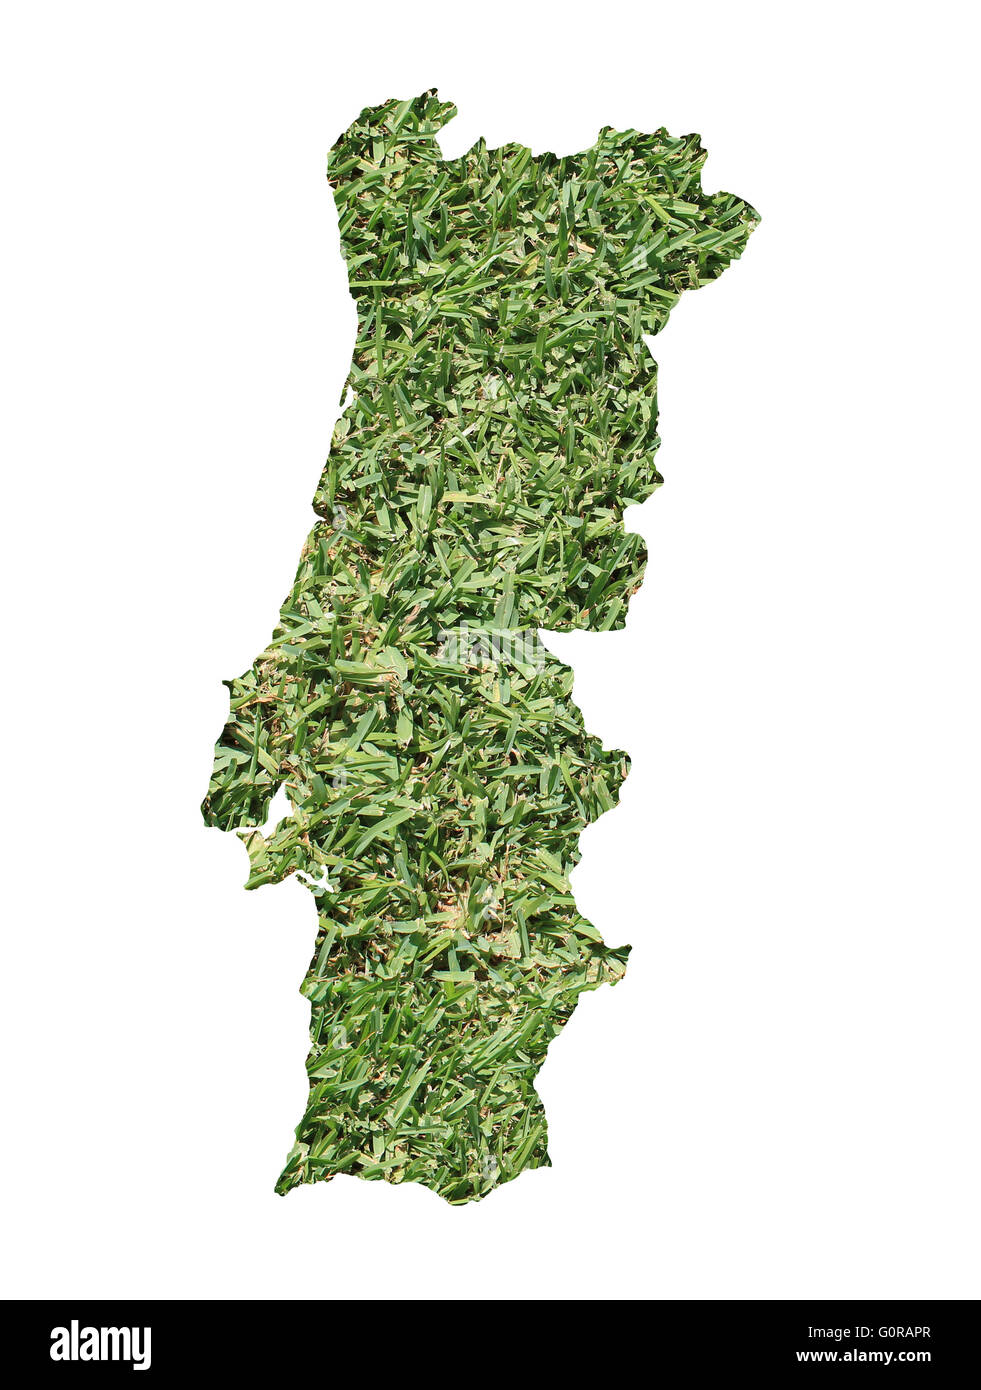 Carte de Portugal rempli d'herbe verte, environnementale et écologique. Banque D'Images